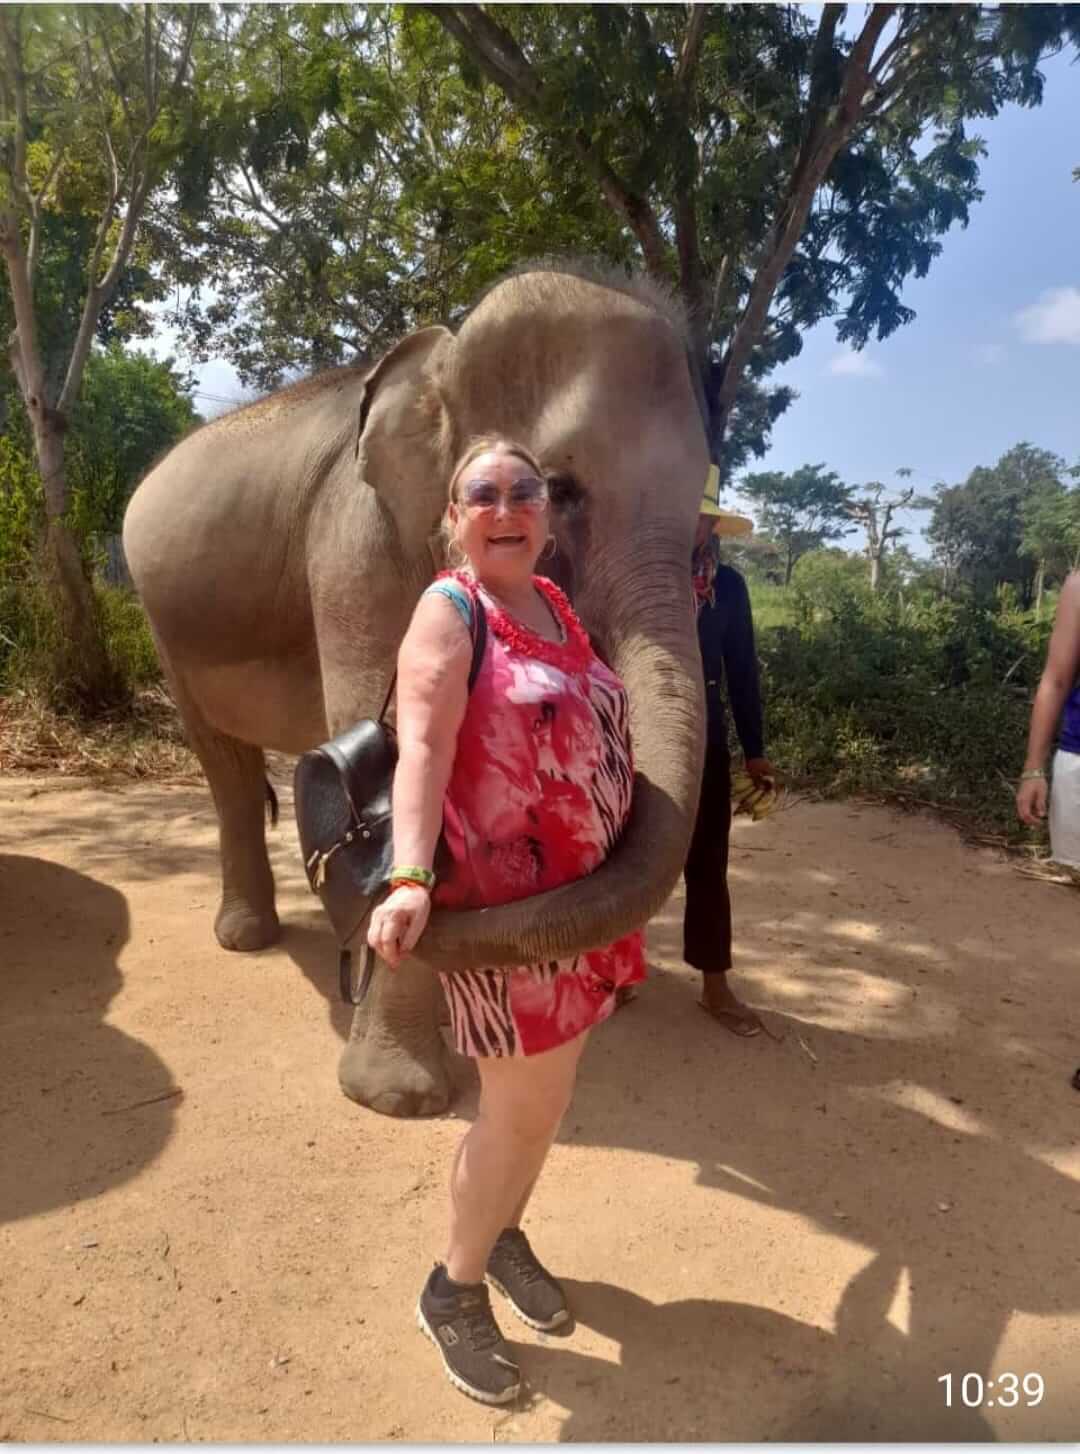 elephant-experience-chiang-mai-thailand-family-vacation-15-days.jpeg